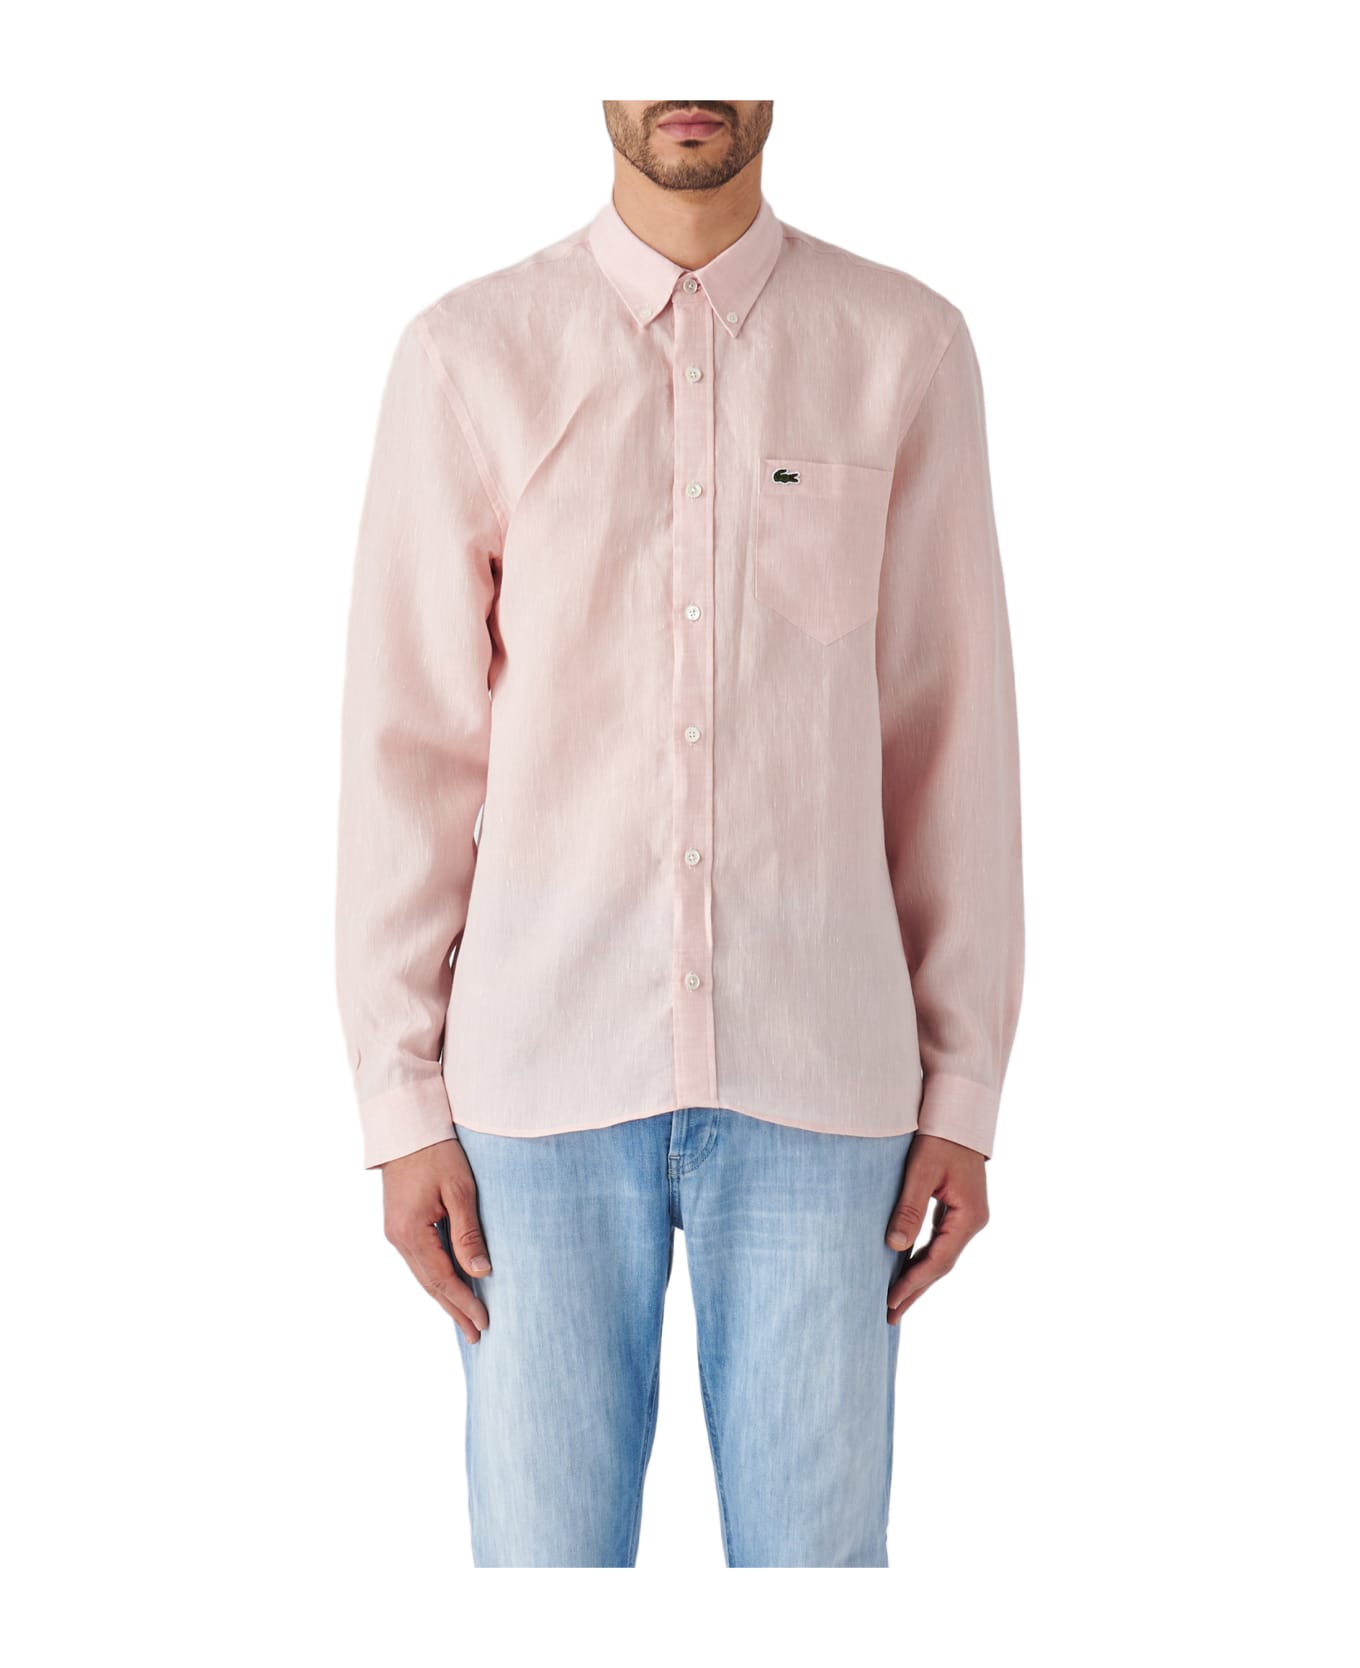 Lacoste Camicia M/l Shirt - ROSA ANTICO シャツ